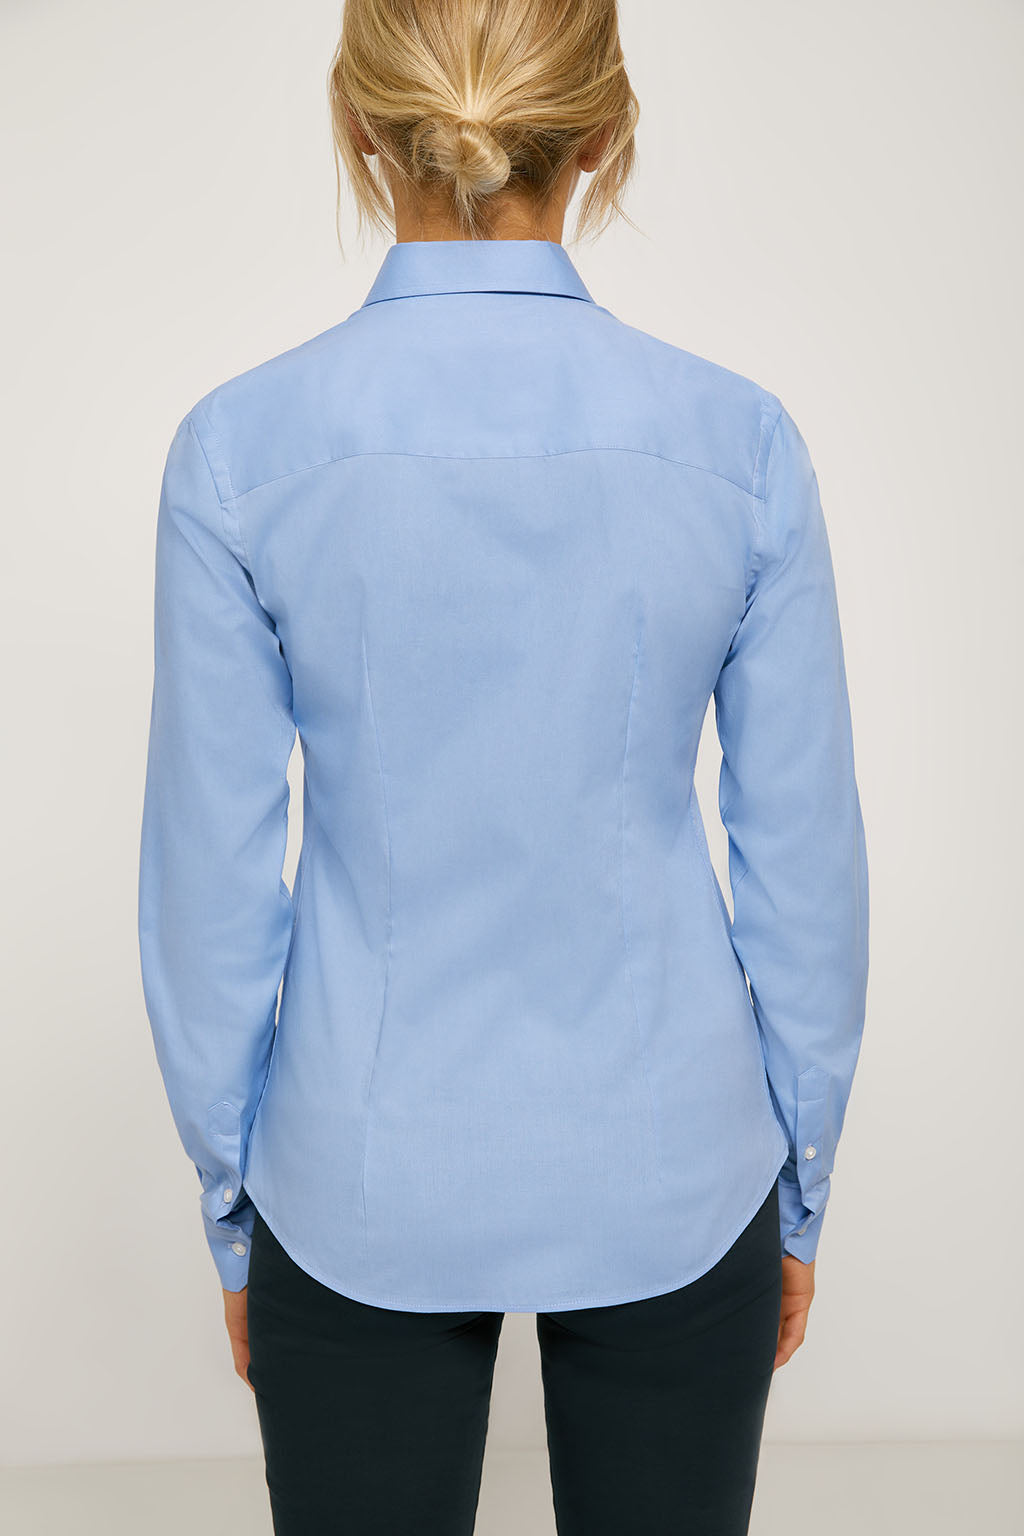 Camisa entallada azul de popelín con logo bordado | MUJER  | POLO CLUB